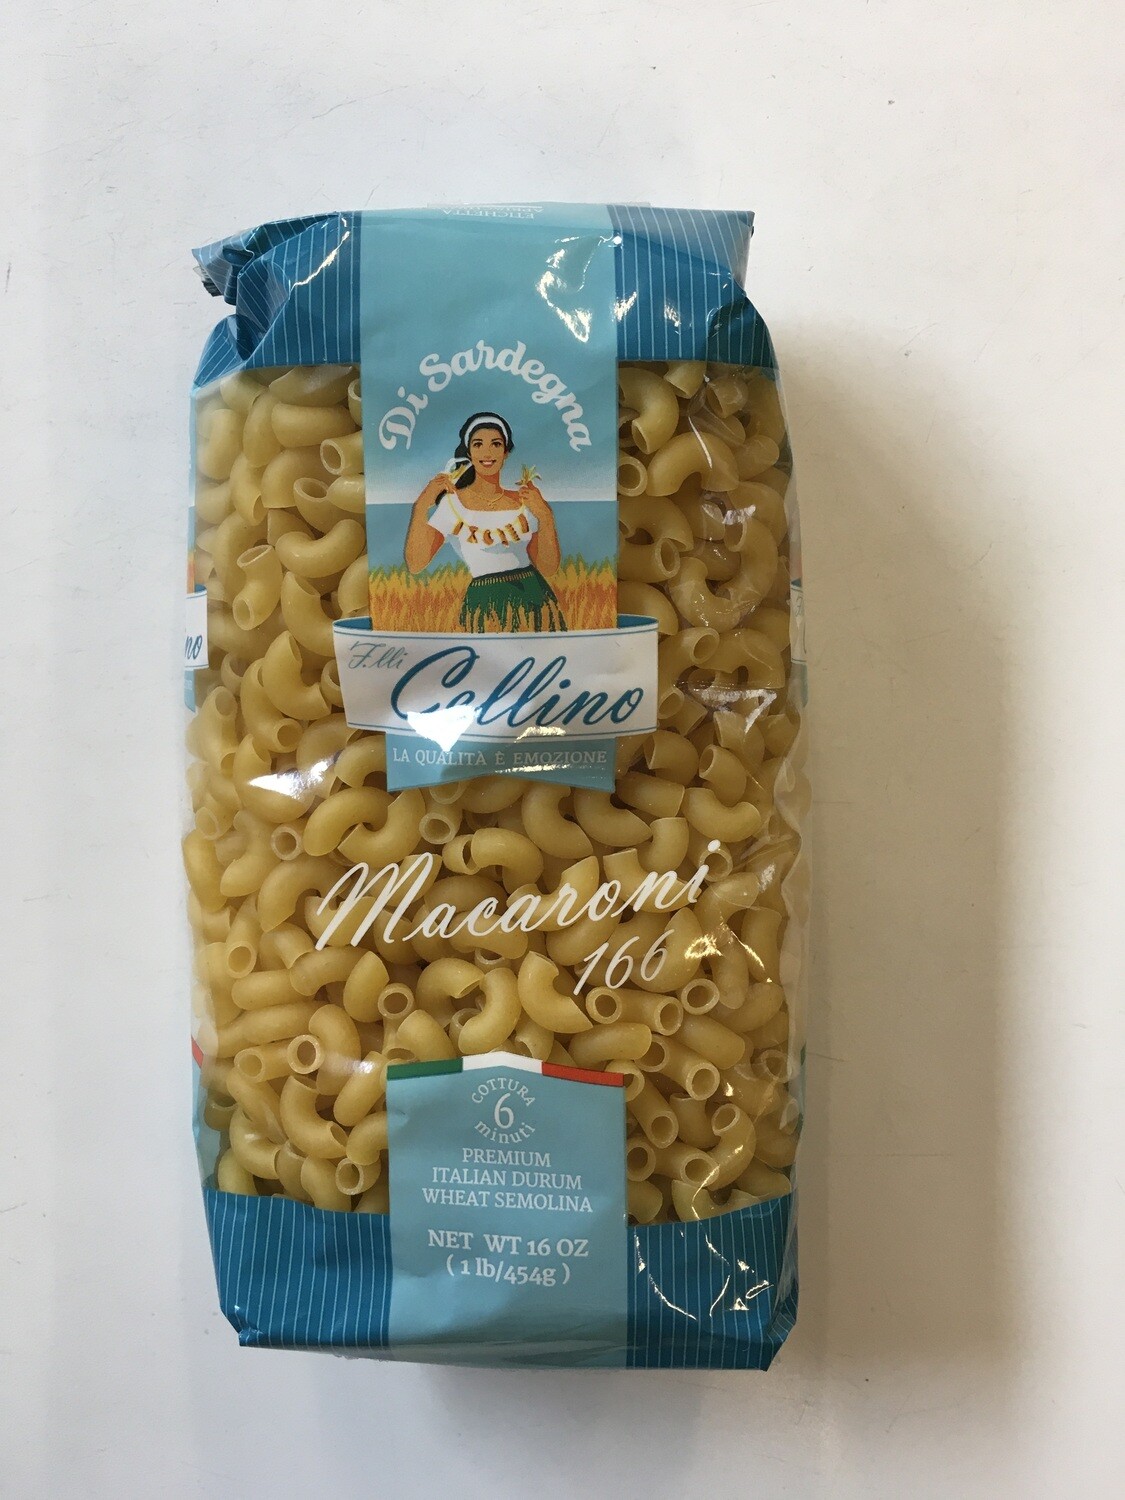 Grocery / Pasta / F.lli Cellino Macaroni 1 lb.